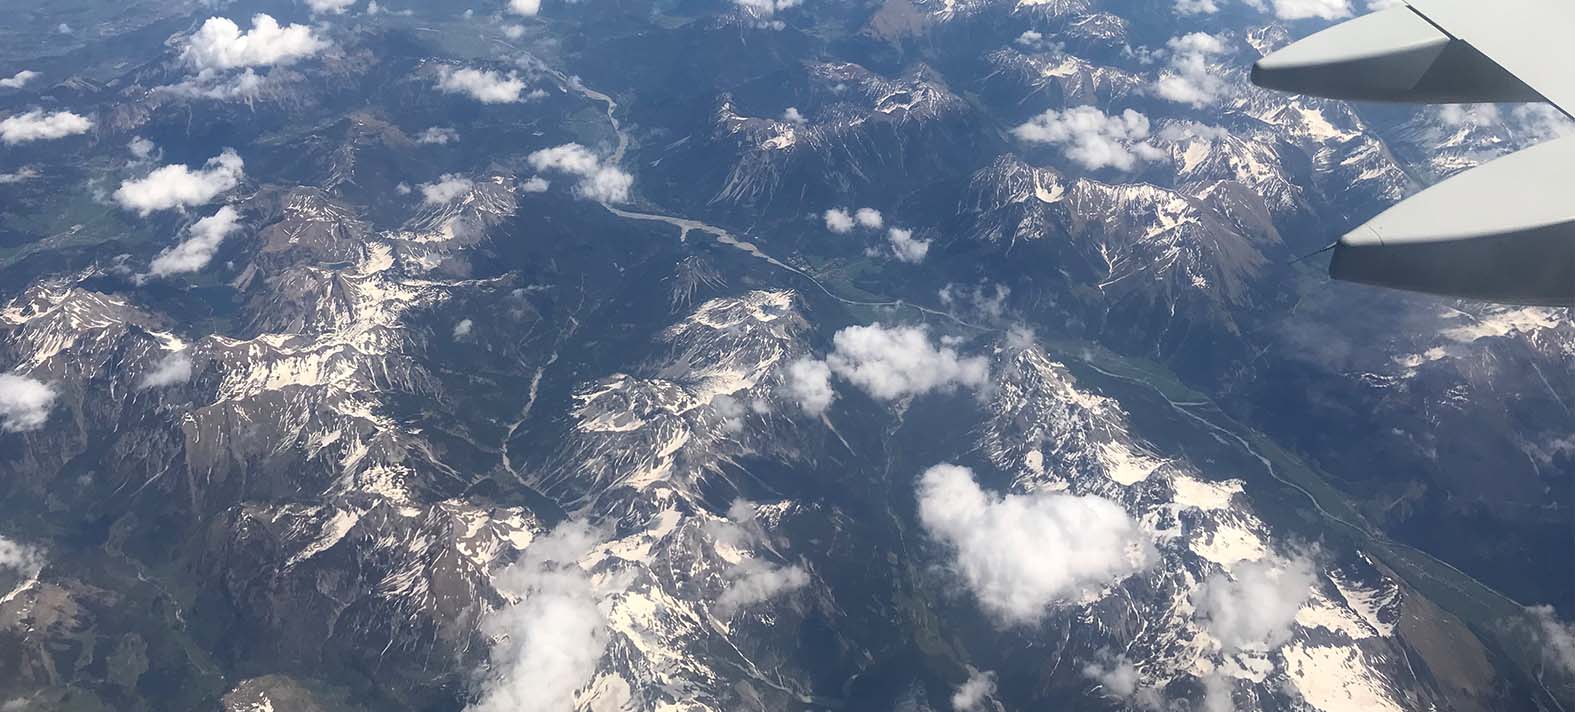 zicht op de Alpen vanuit ons vliegtuig